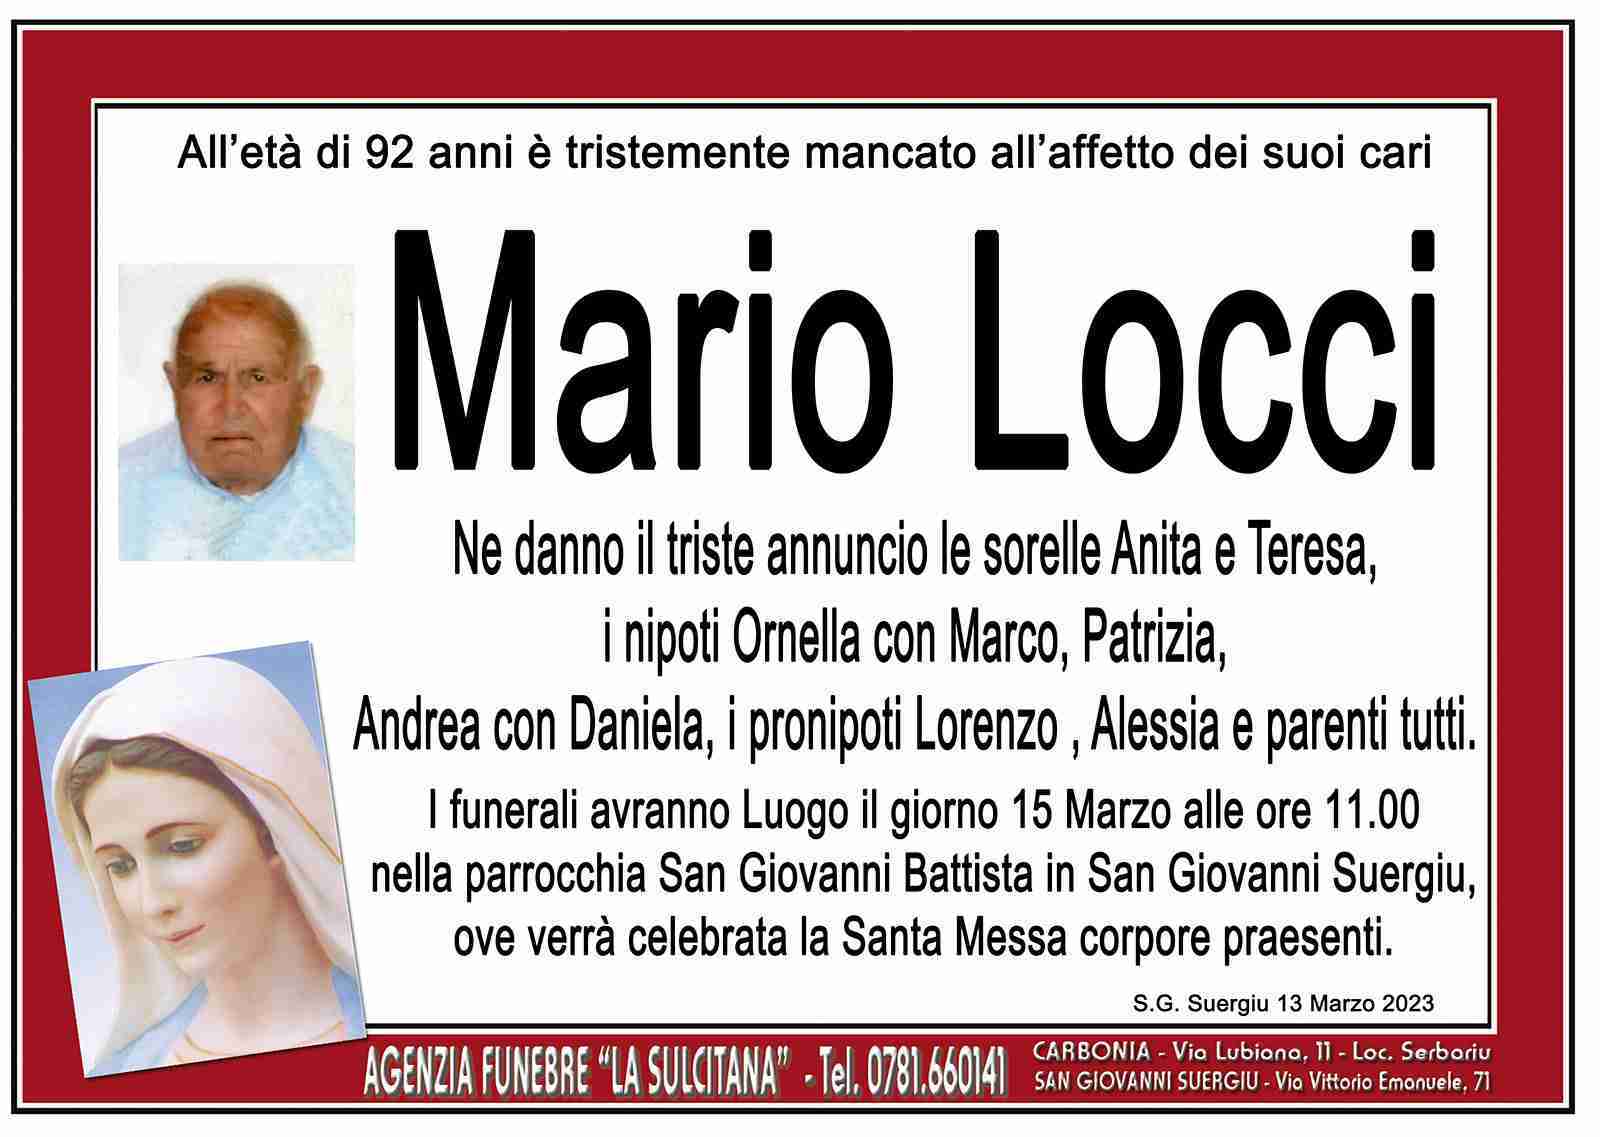 Mario Locci